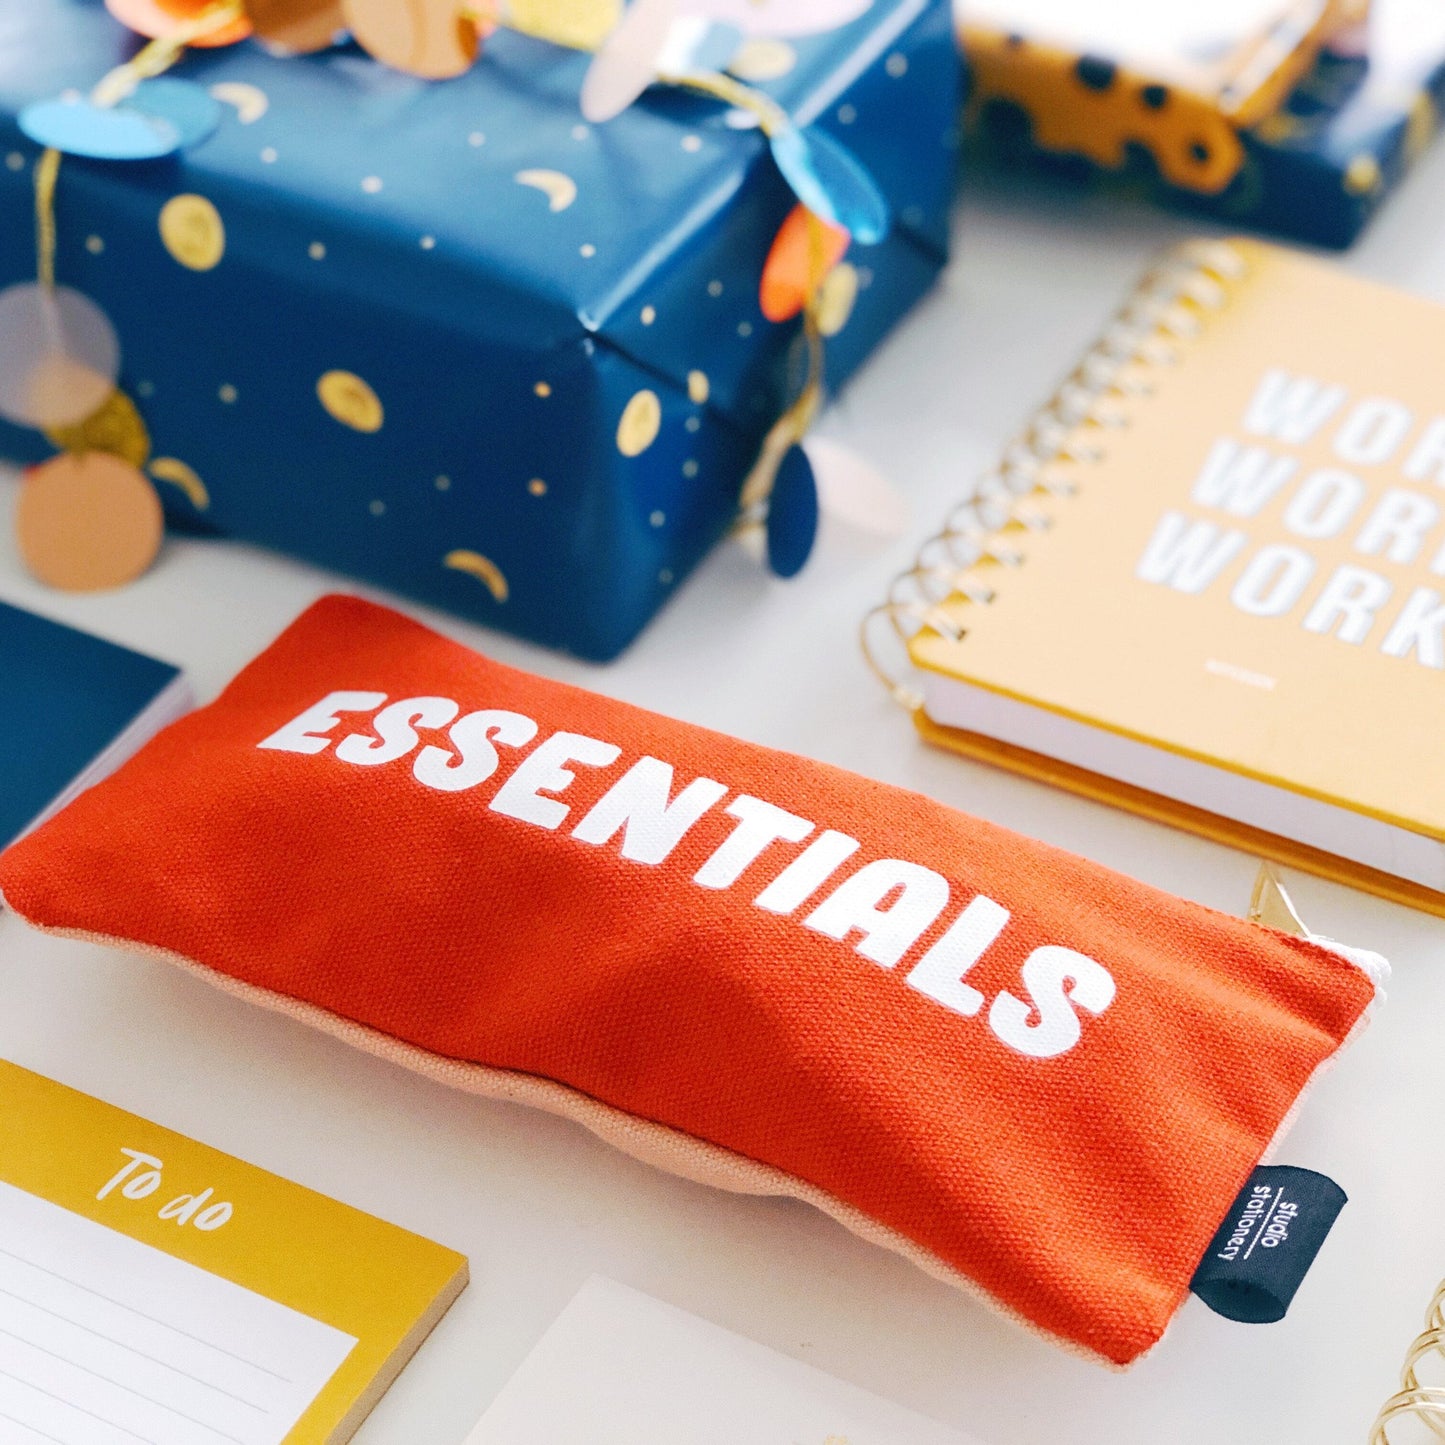 Canvas bag - Essentials